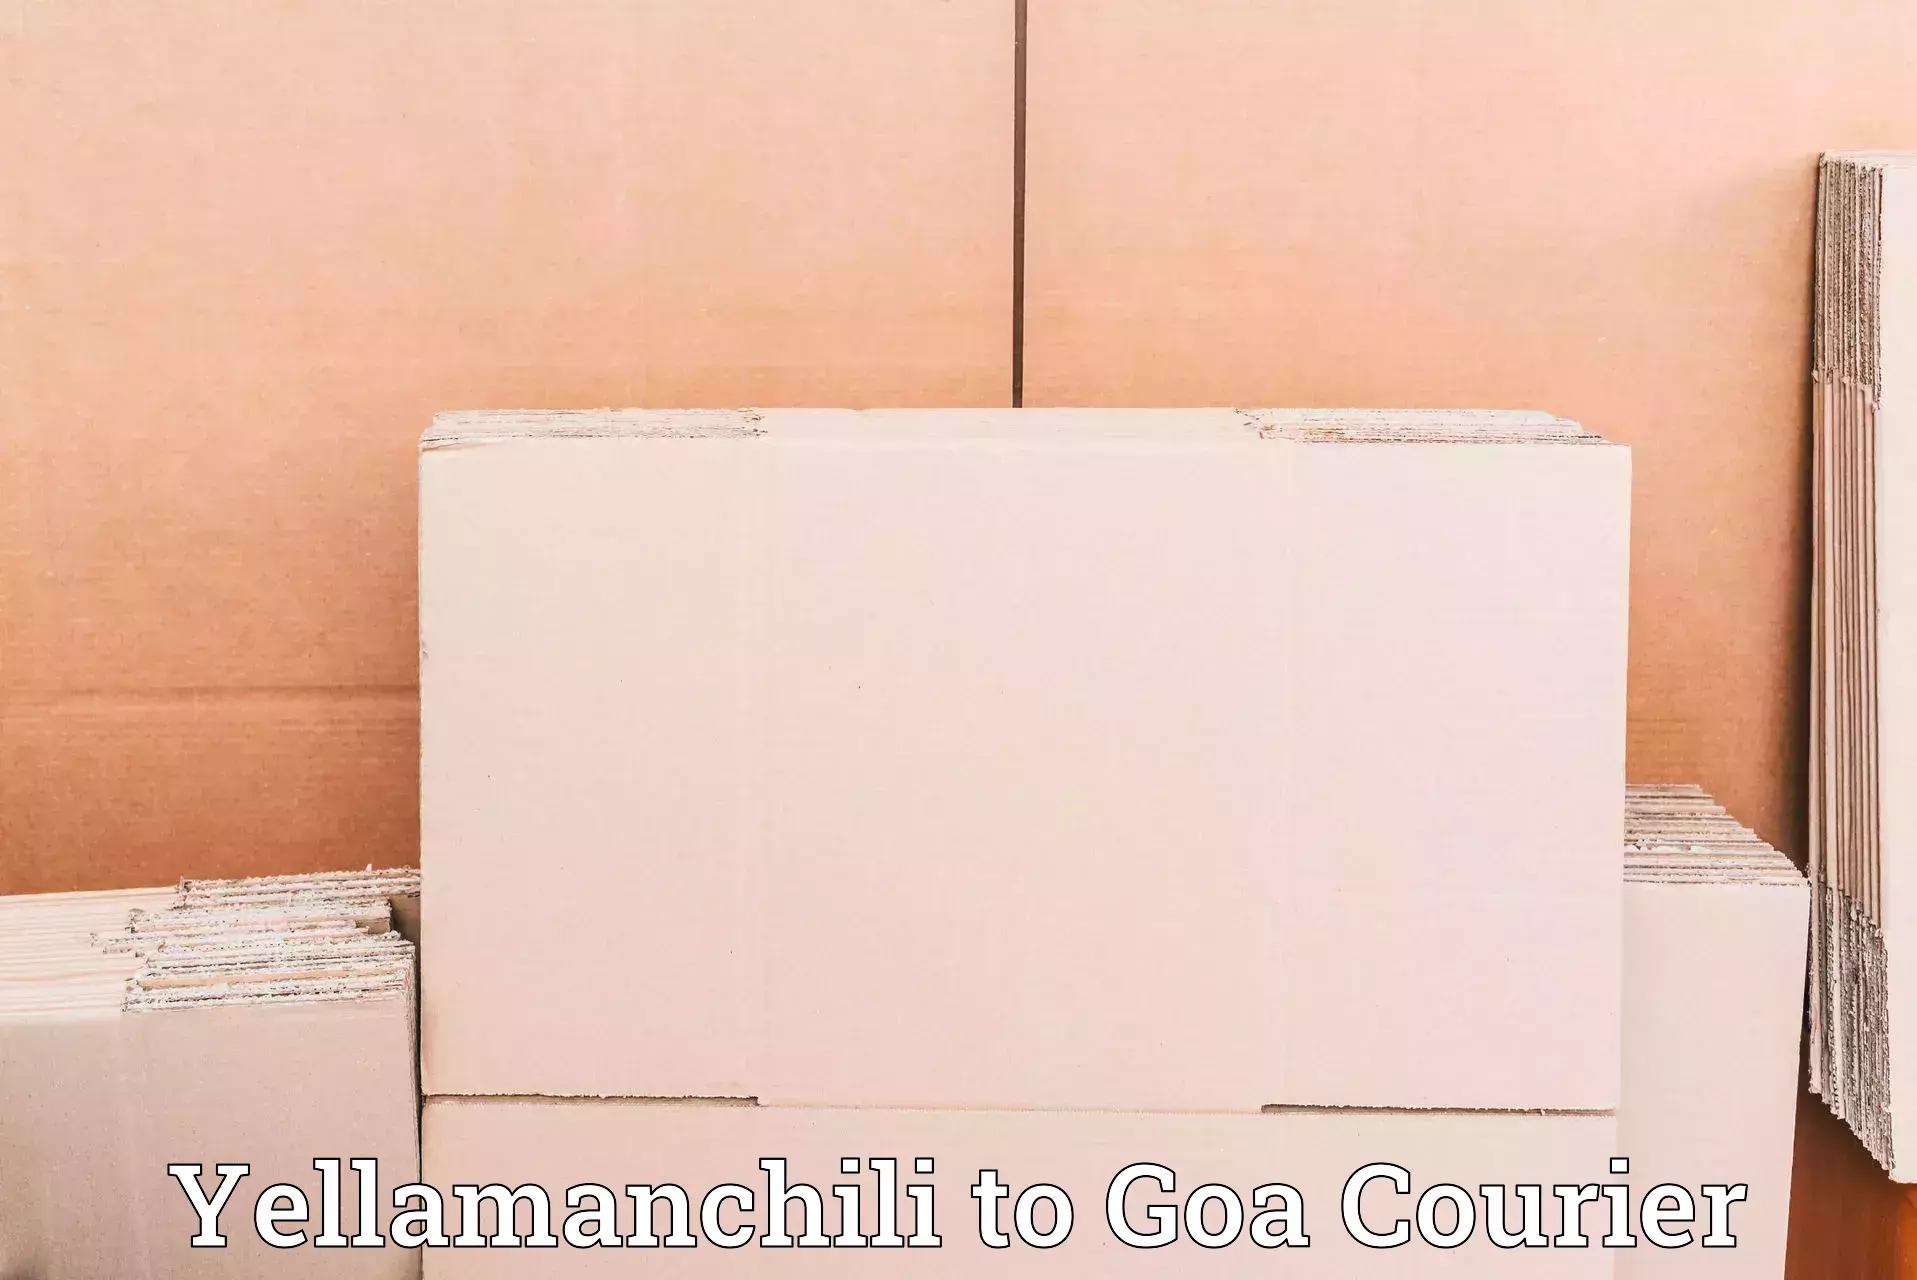 Advanced tracking systems Yellamanchili to Goa